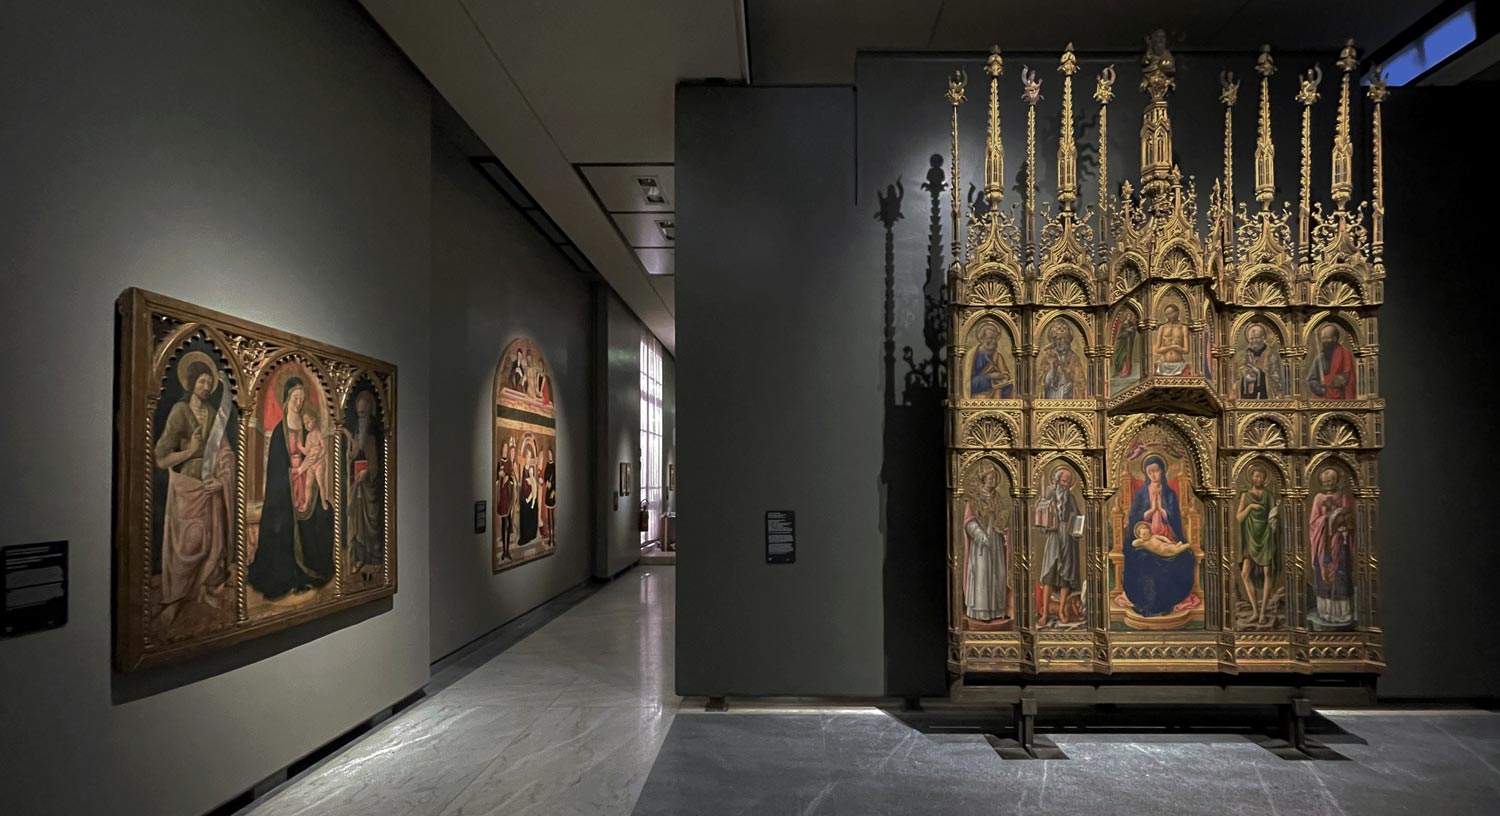 Bologne, les salles Renaissance de la Pinacothèque nationale entièrement rénovées